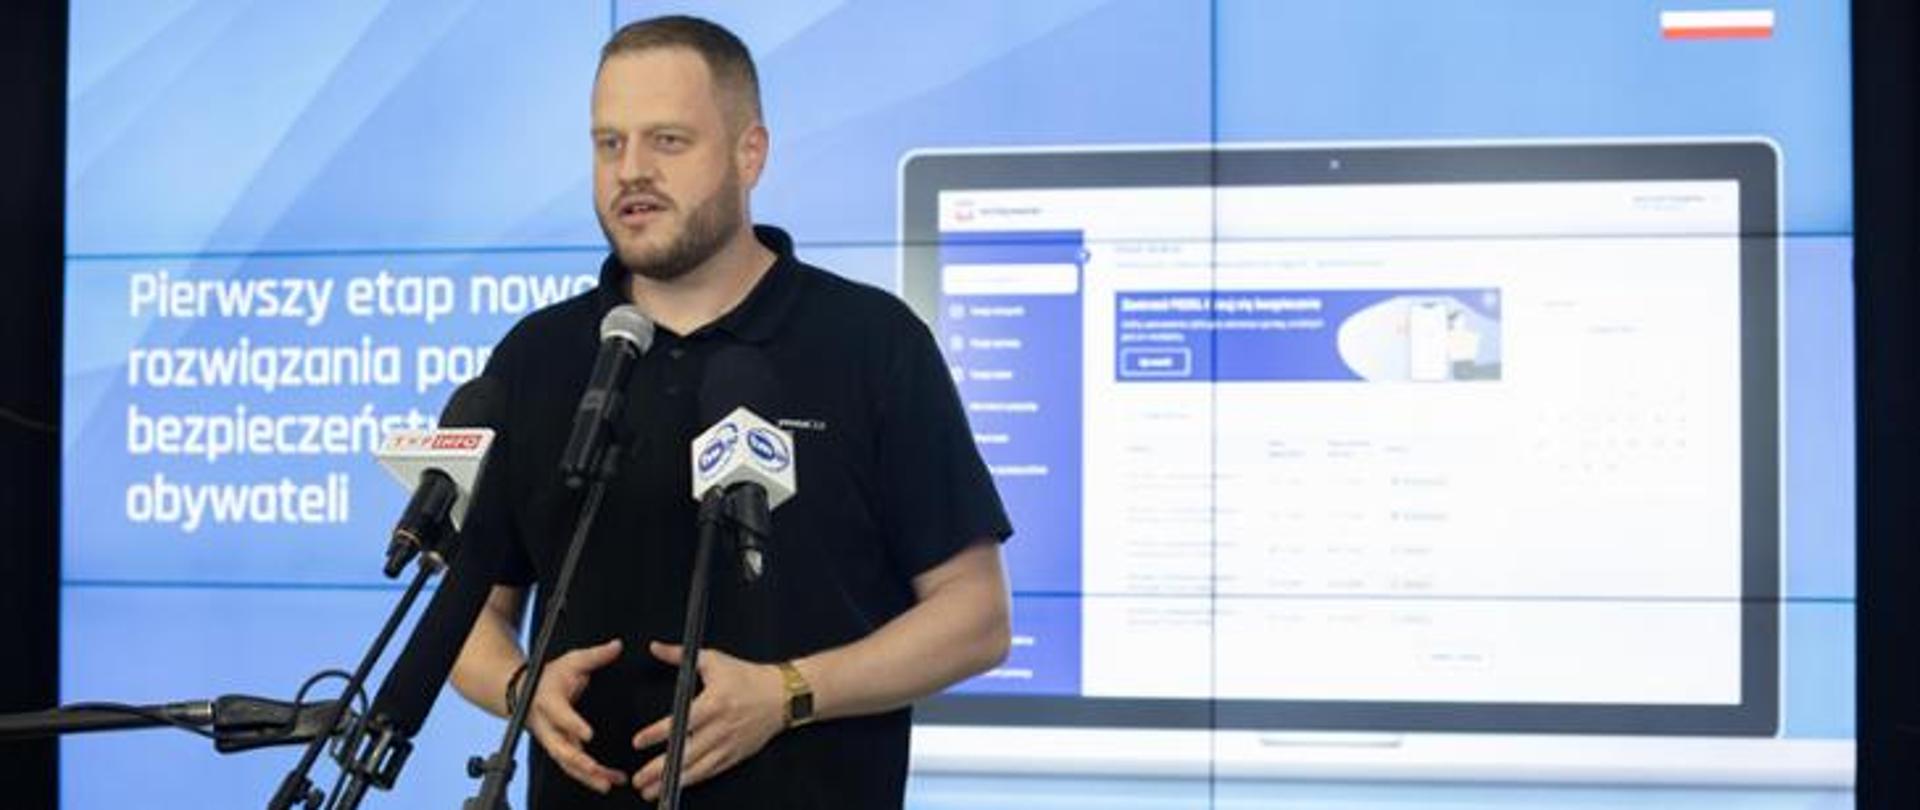 Zdjęcie ministra cyfryzacji Janusza Cieszyńskiego ogłaszającego I etap nowego rozwiązania poprawiającego bezpieczeństwo danych obywateli